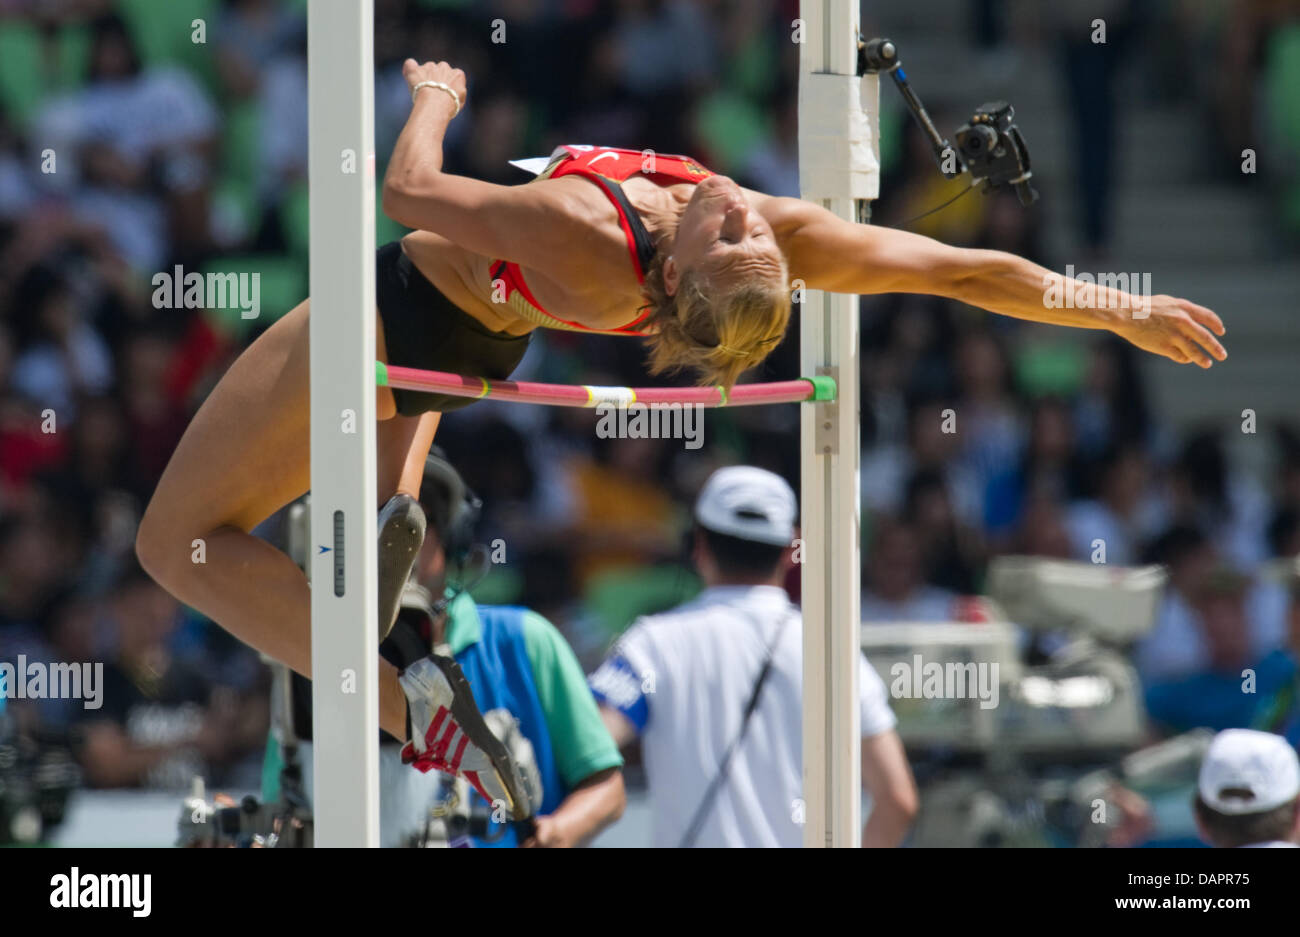 Jennifer Oeser de Alemania compite en el salto de altura femenino evento del Heptathlon competencia en la 13ª IAAF Campeonatos Mundiales de Atletismo, en Daegu, República de Corea, el 29 de agosto de 2011. Foto: Bernd Thyssen dpa Foto de stock